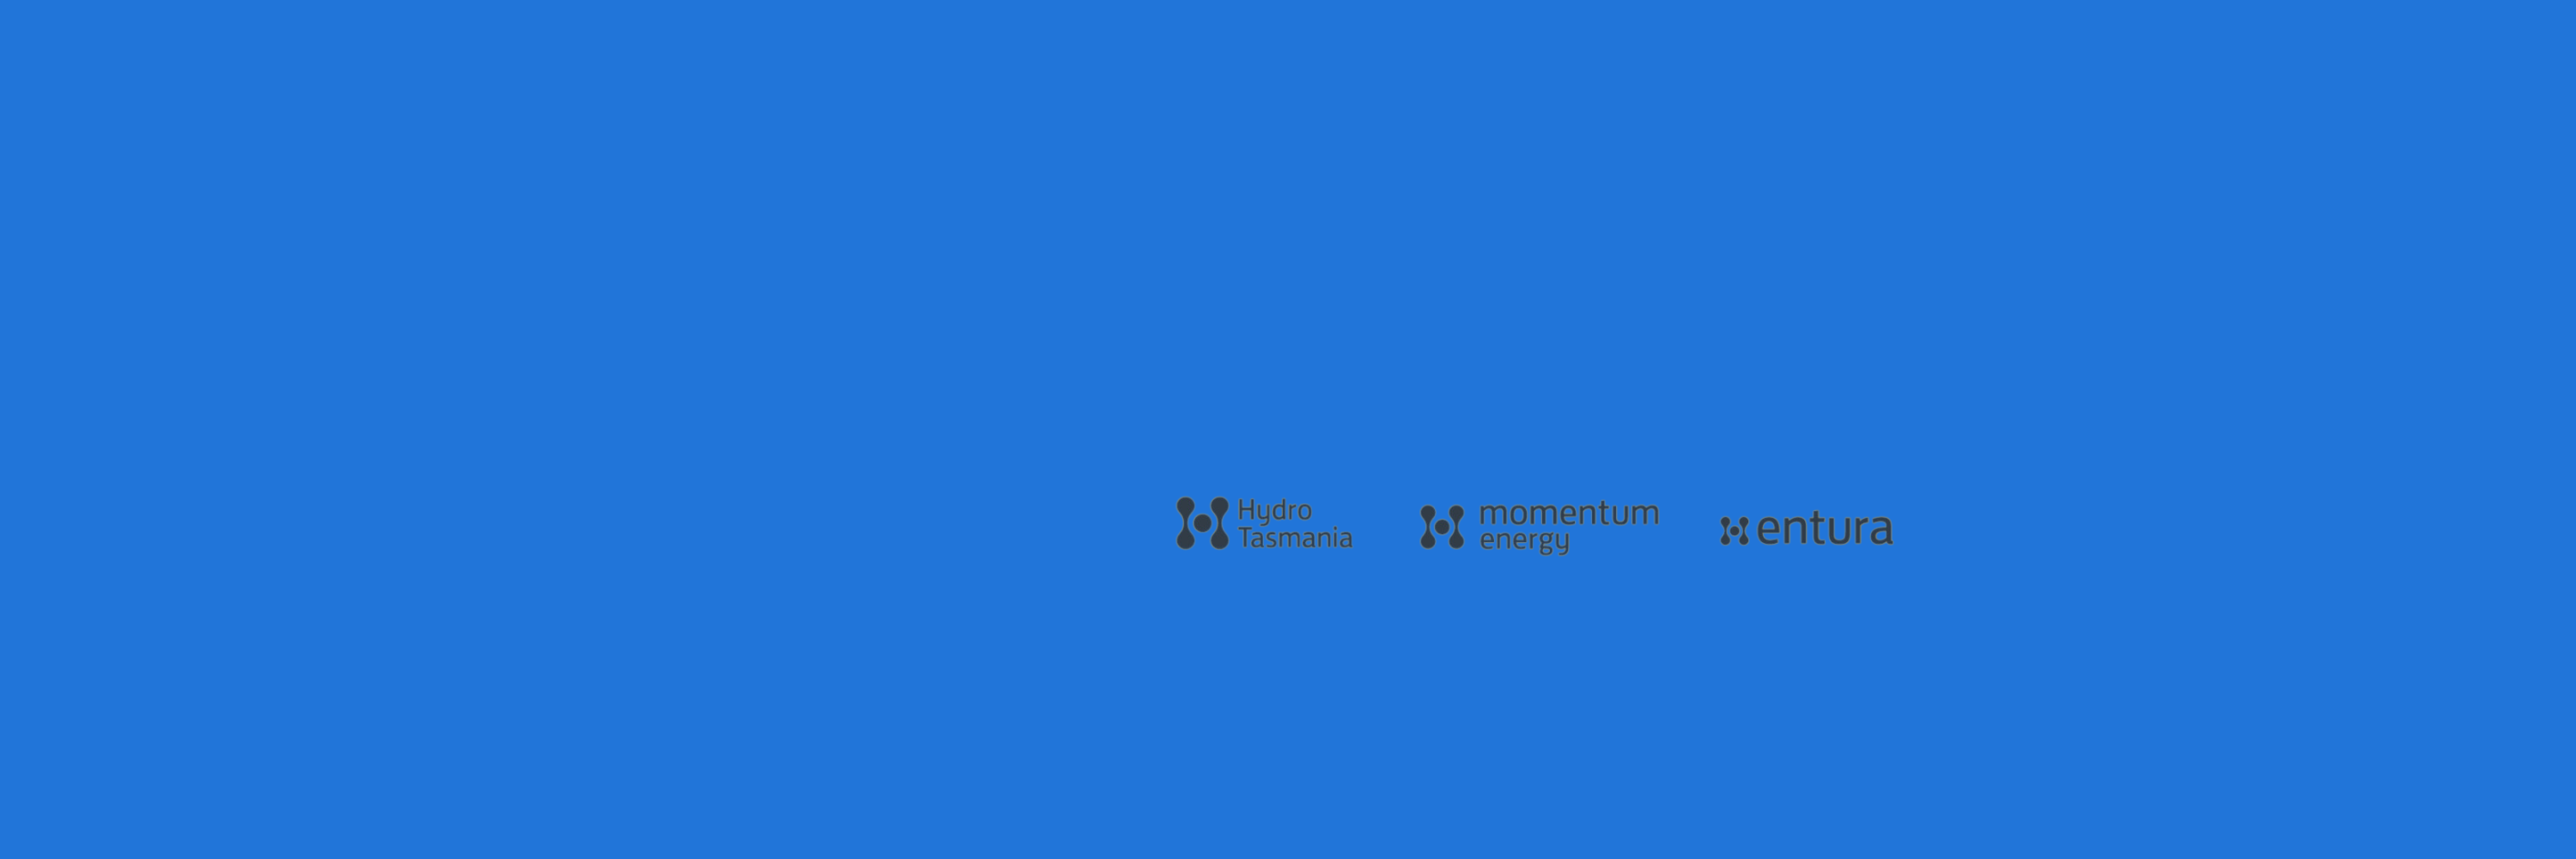 hydro Tasmania, momentum energy, entura logos